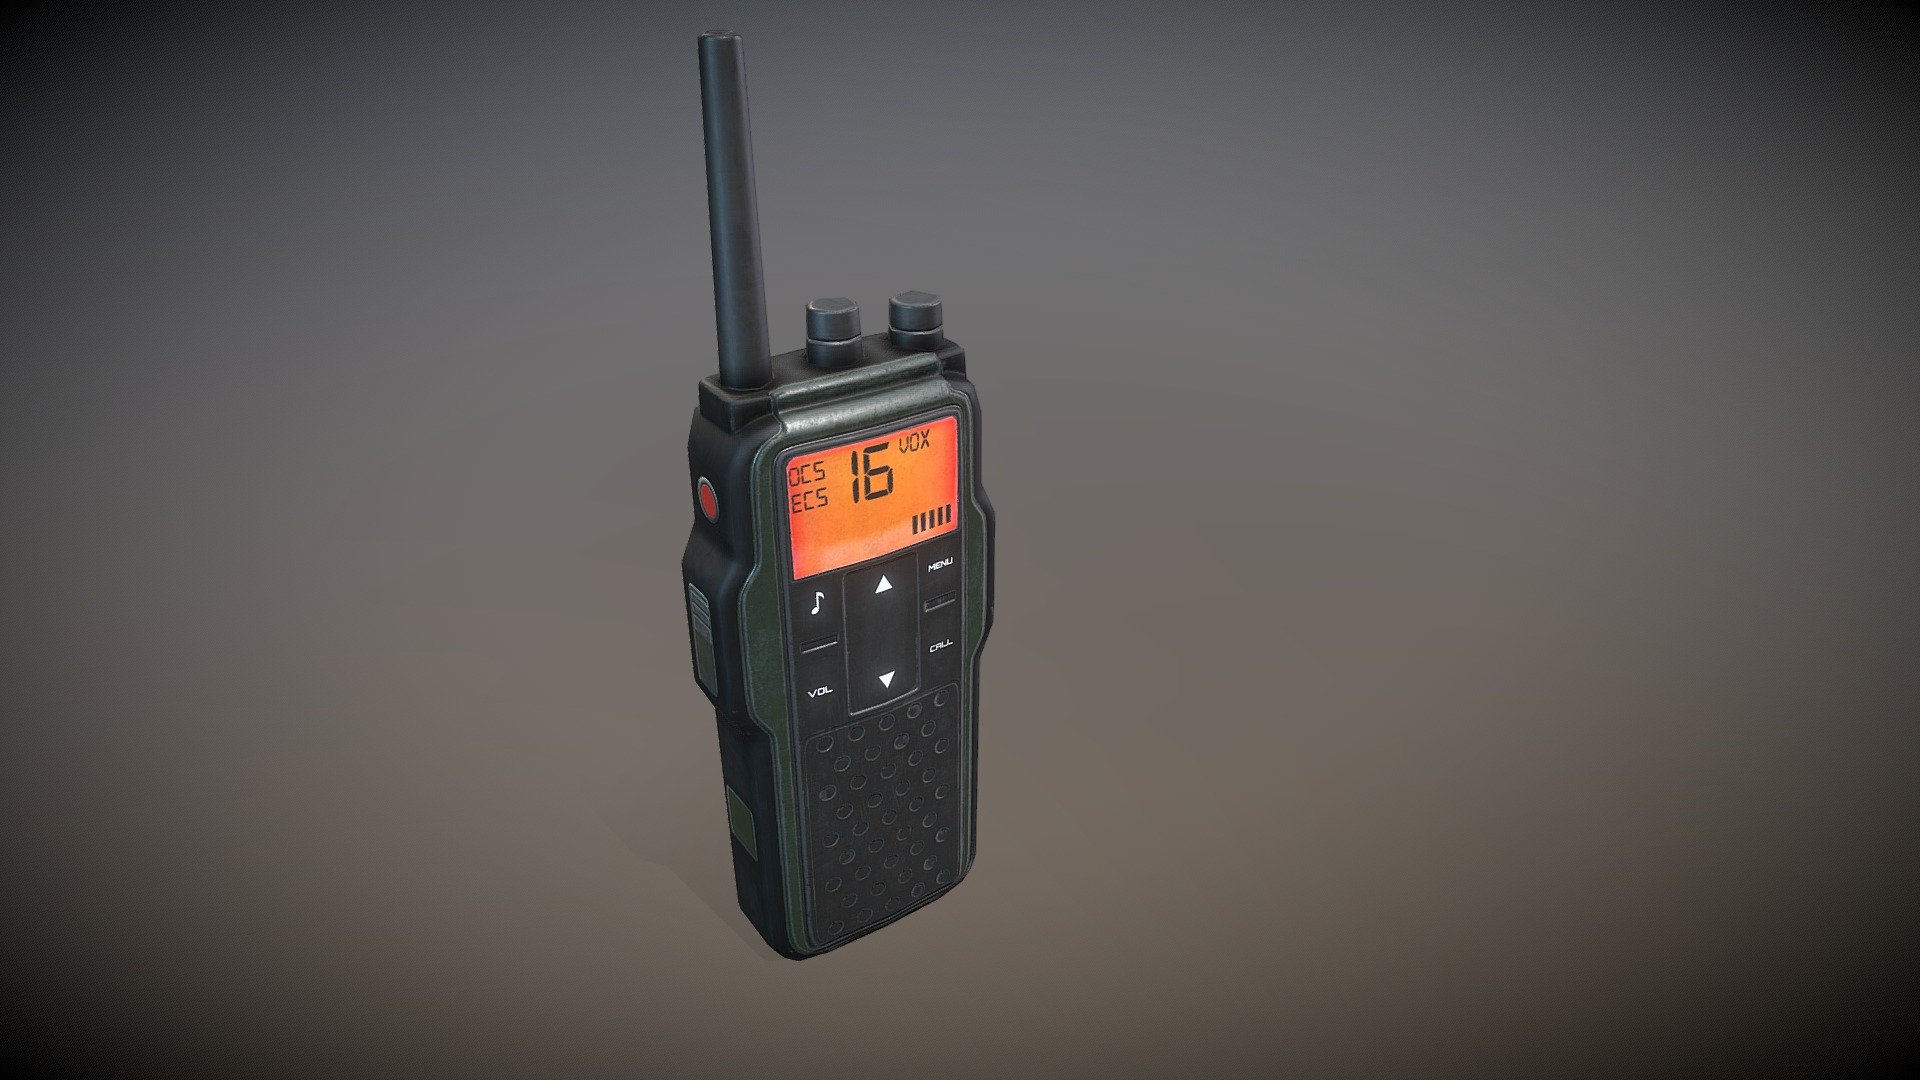 Military walkie-talkies